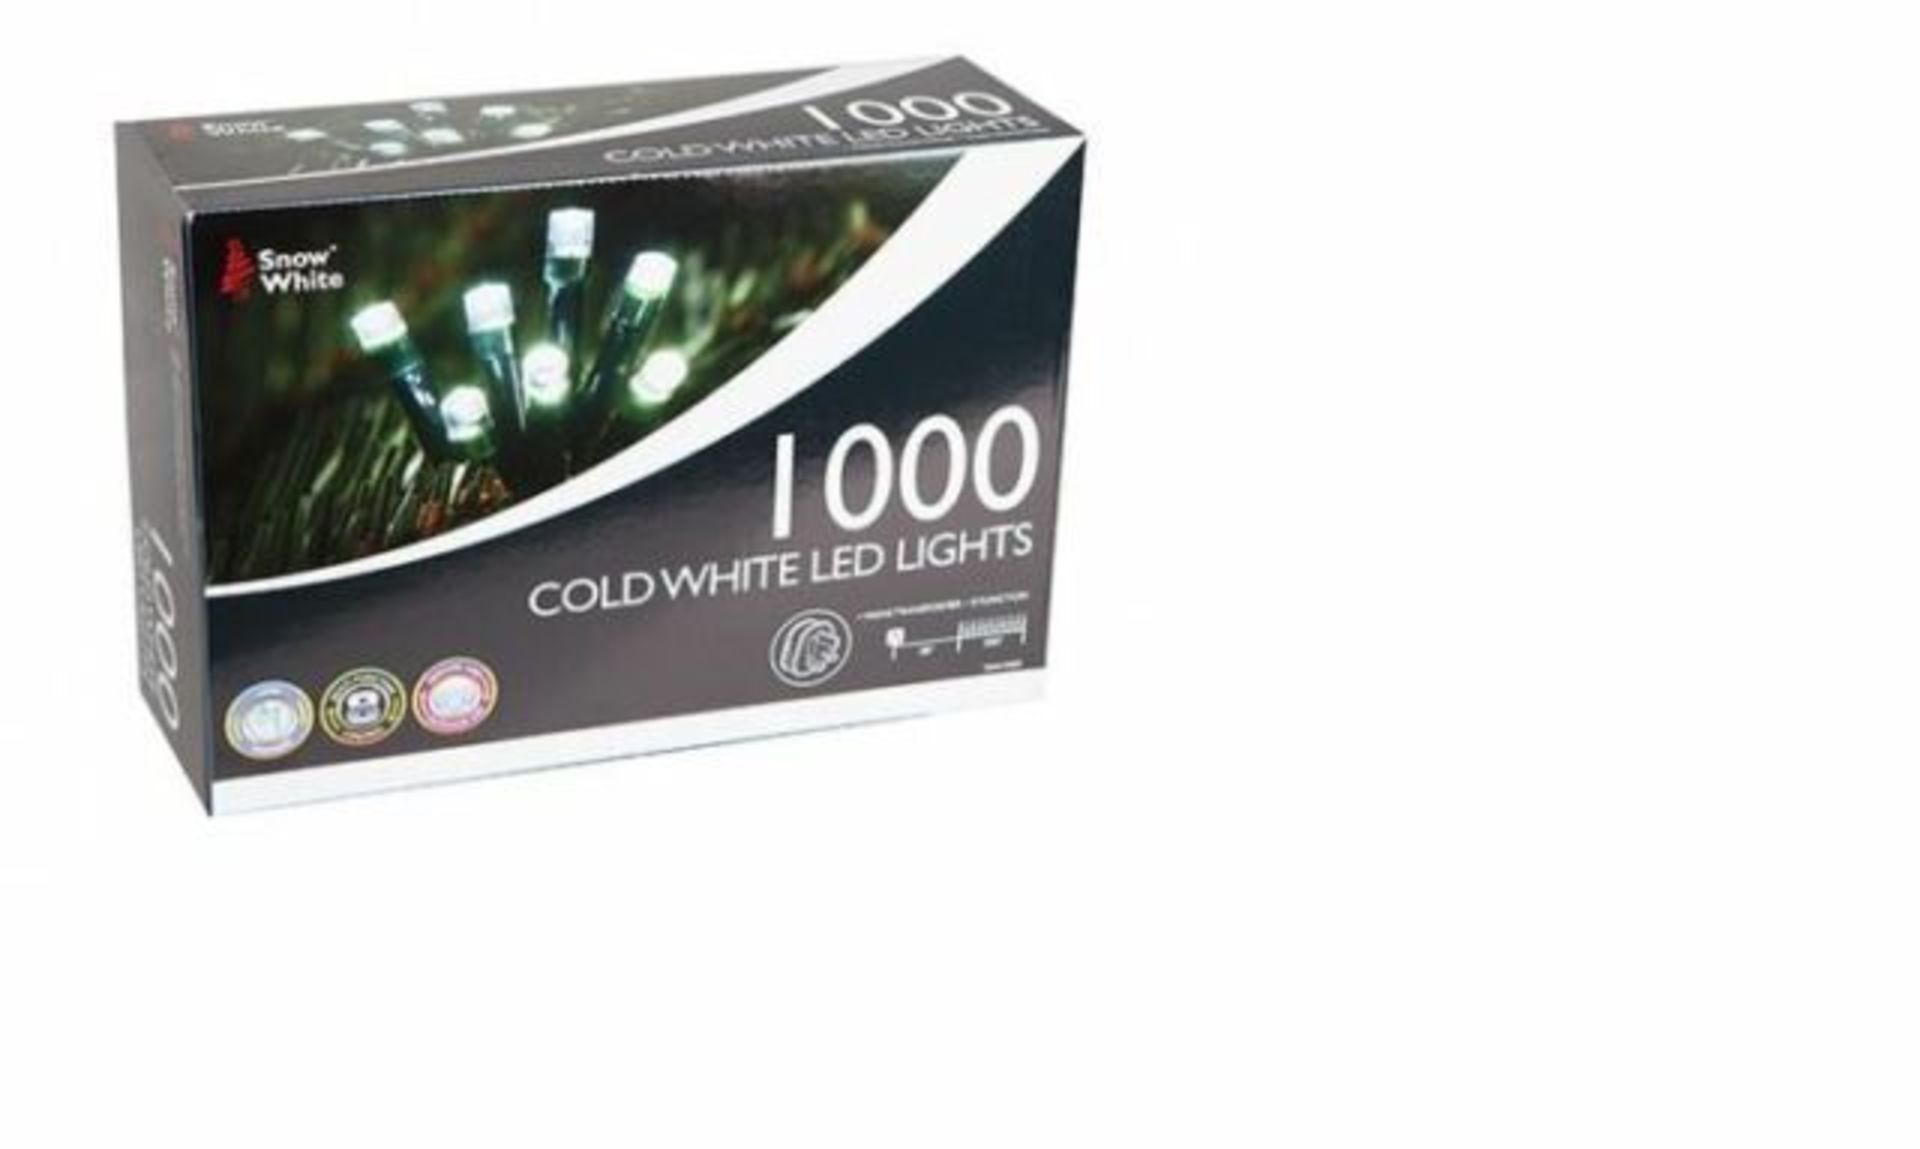 V Brand New 1000 Cold White LED Multi Function Christmas Lights